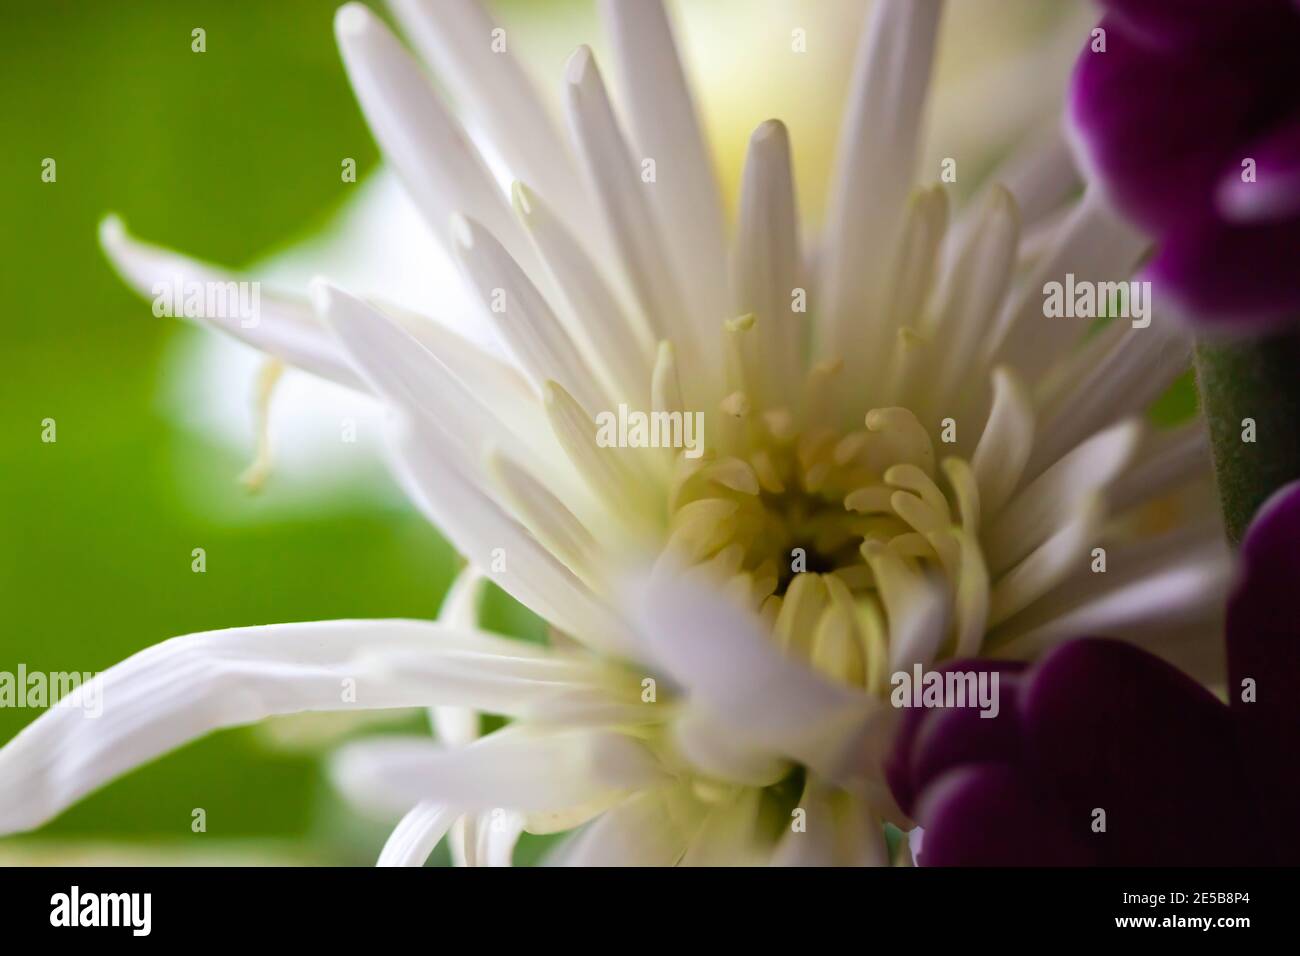 Nahaufnahme von frischen weißen Chrysanthemen und violetten Asterblüten Bouquet Stockfoto